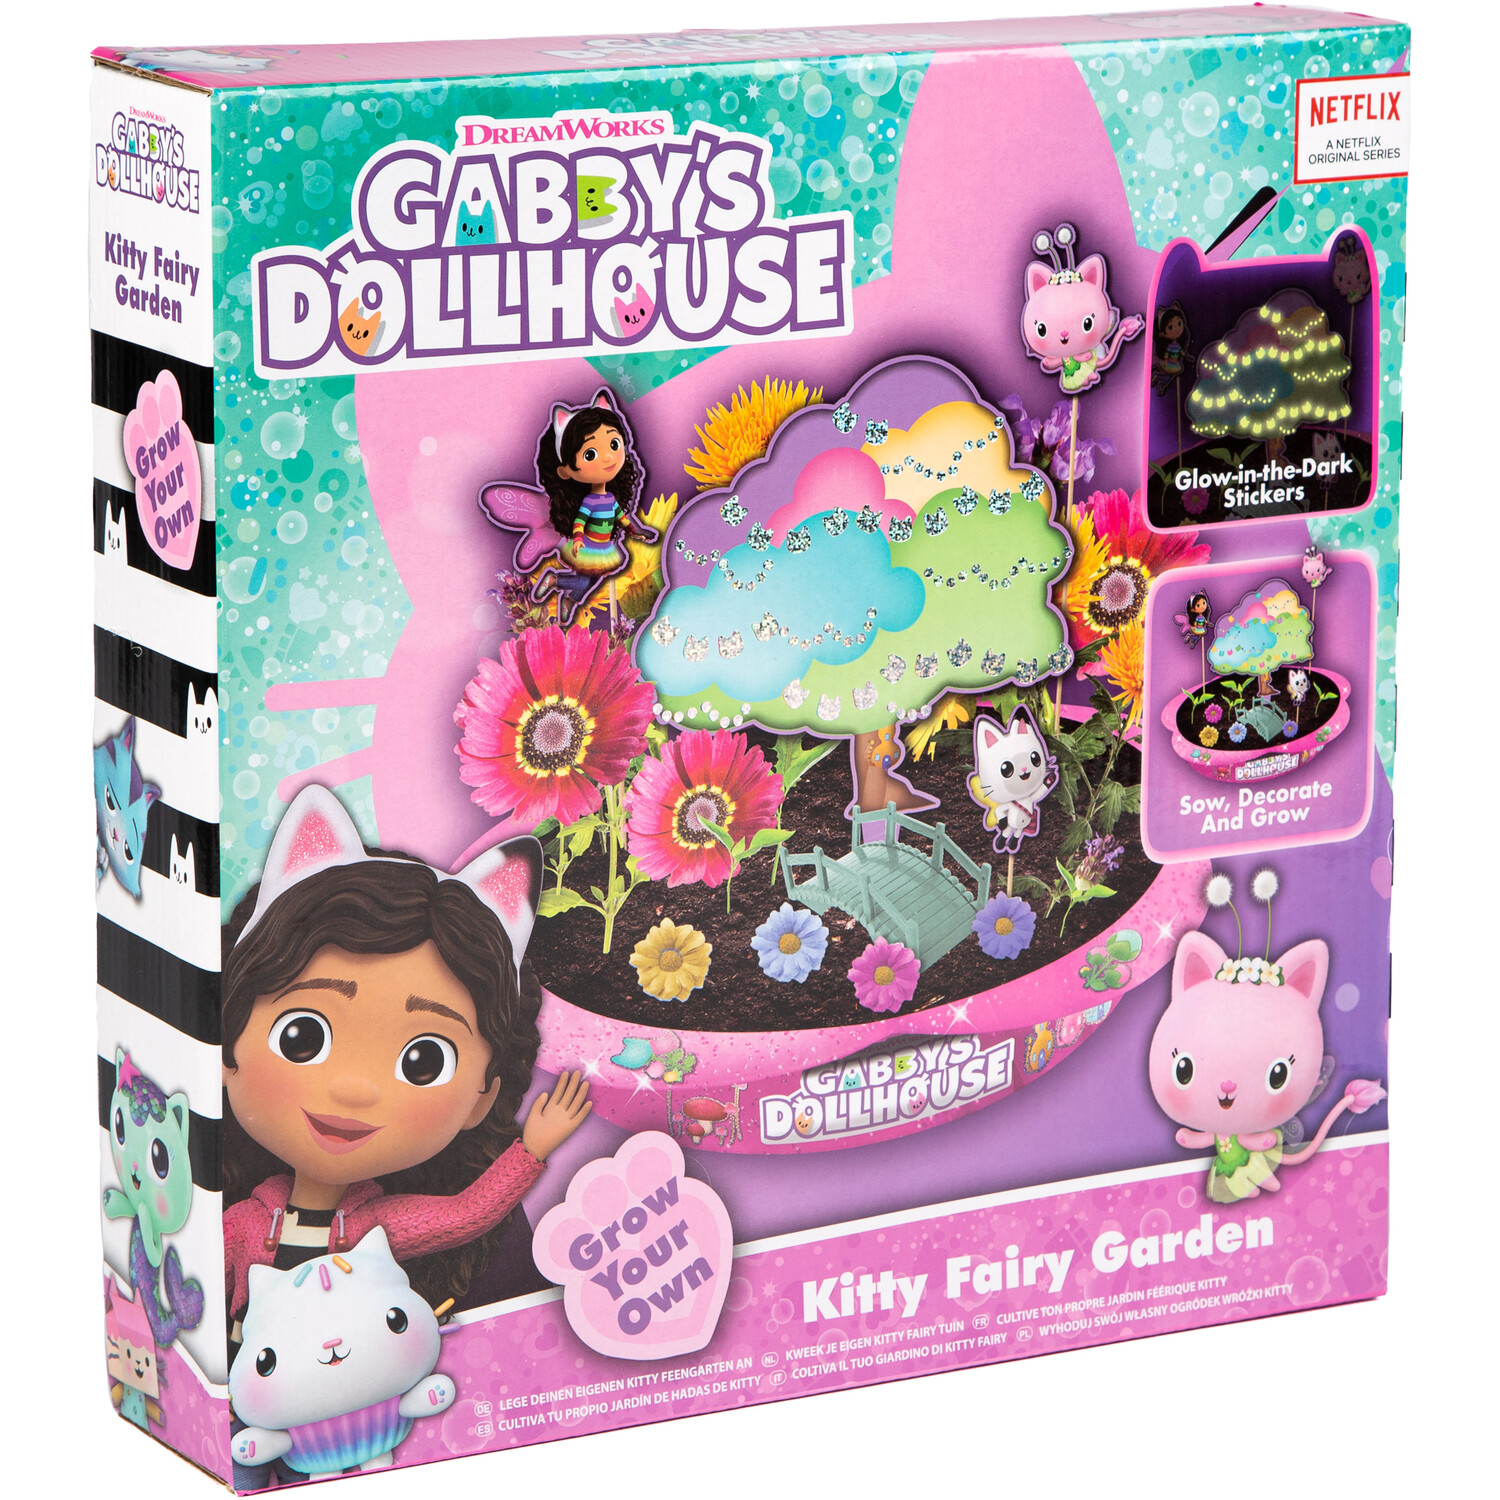 Gabby's Dollhouse Grow Your Own Kitty Fairy Garden Image 1